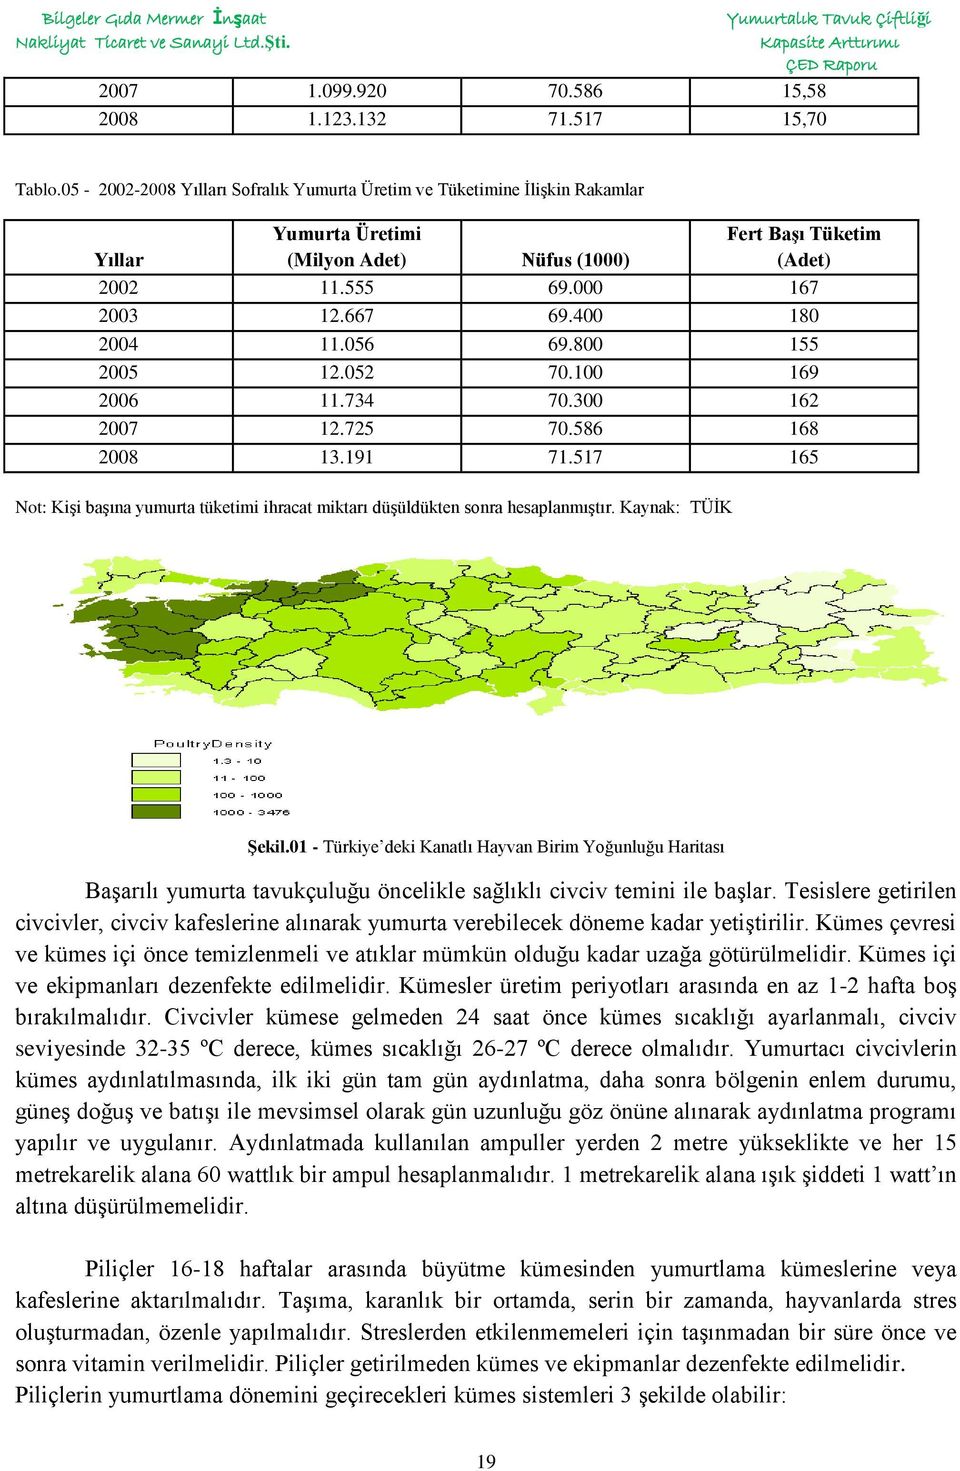 экономическая оценка условий вертикальной интеграции лесозаготовок с